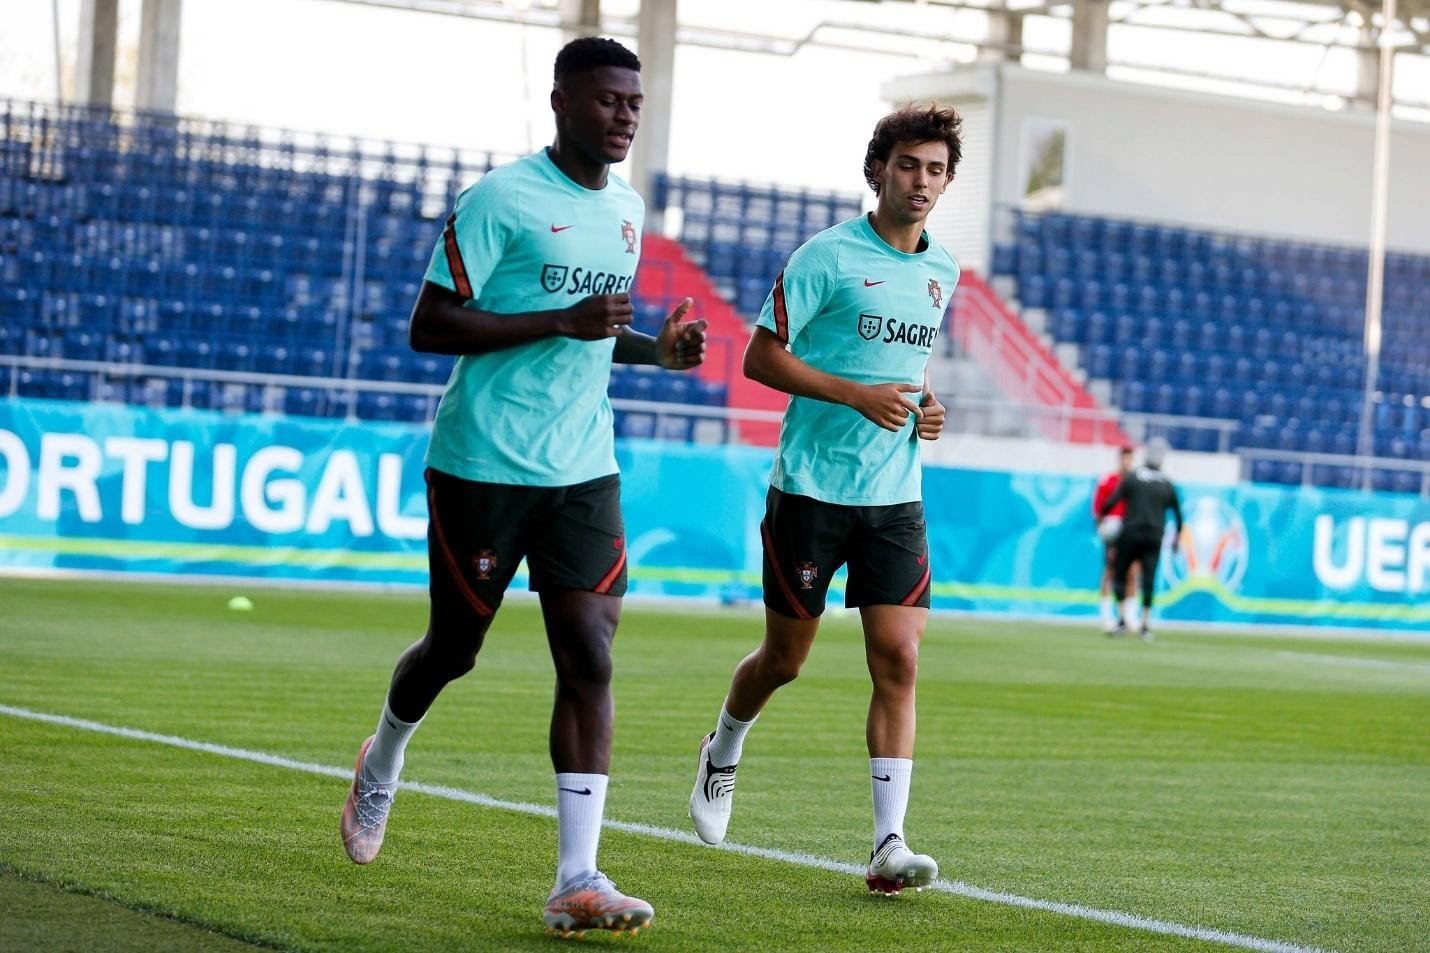 Joao Felix luyện tập sau chấn thương để có thể bùng nổ trên sân trong mùa giải euro 2020